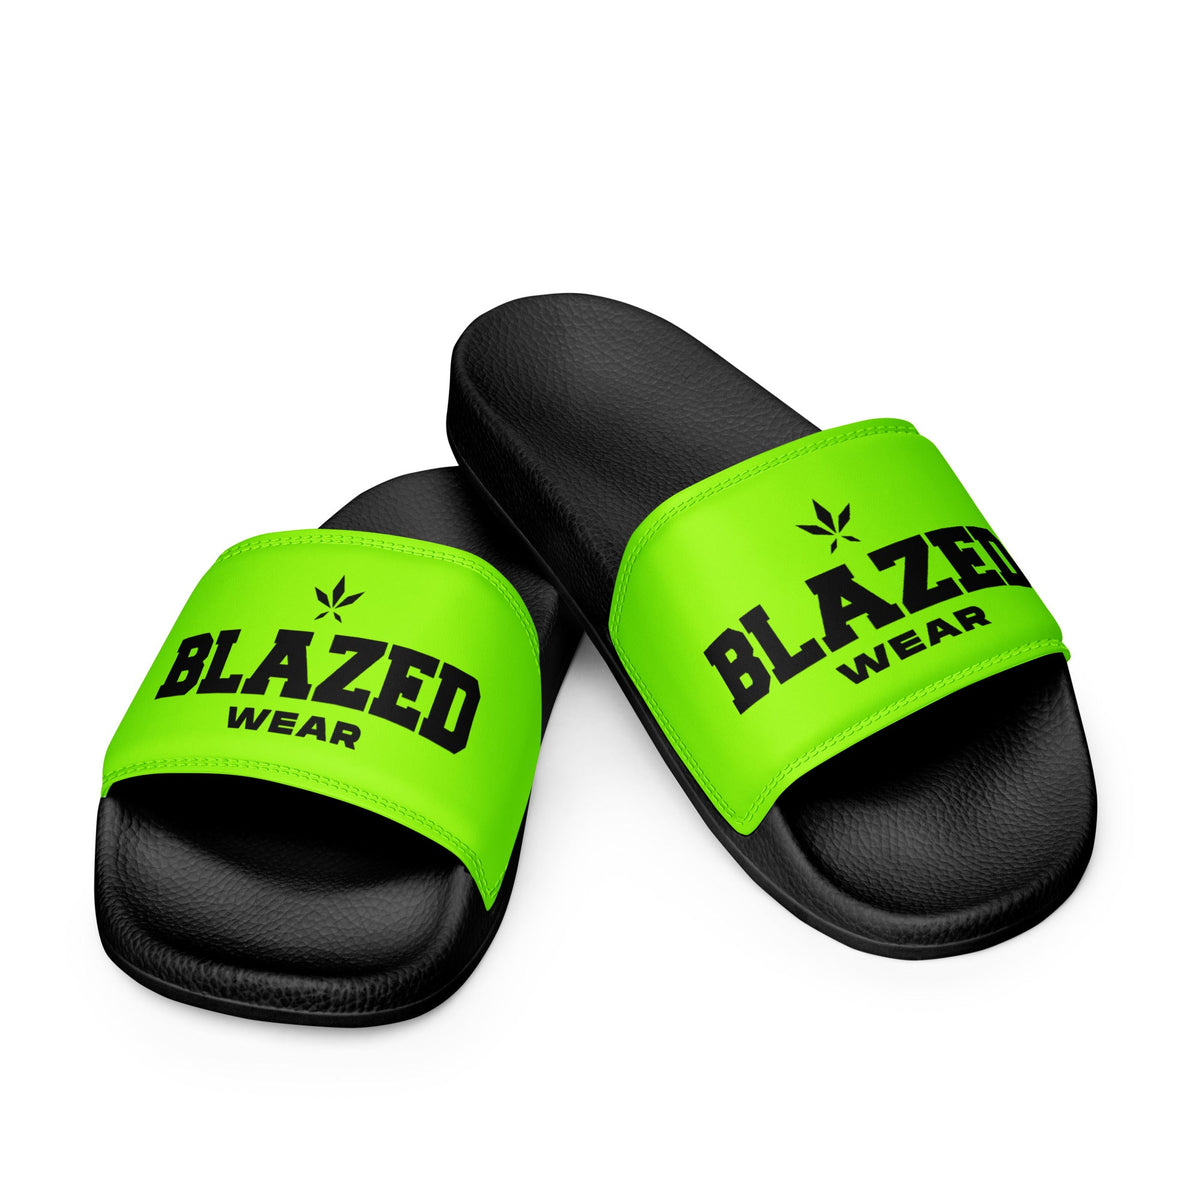 Blazed Wear Classic Logo Slides - Neon on Black - Blazed Wear